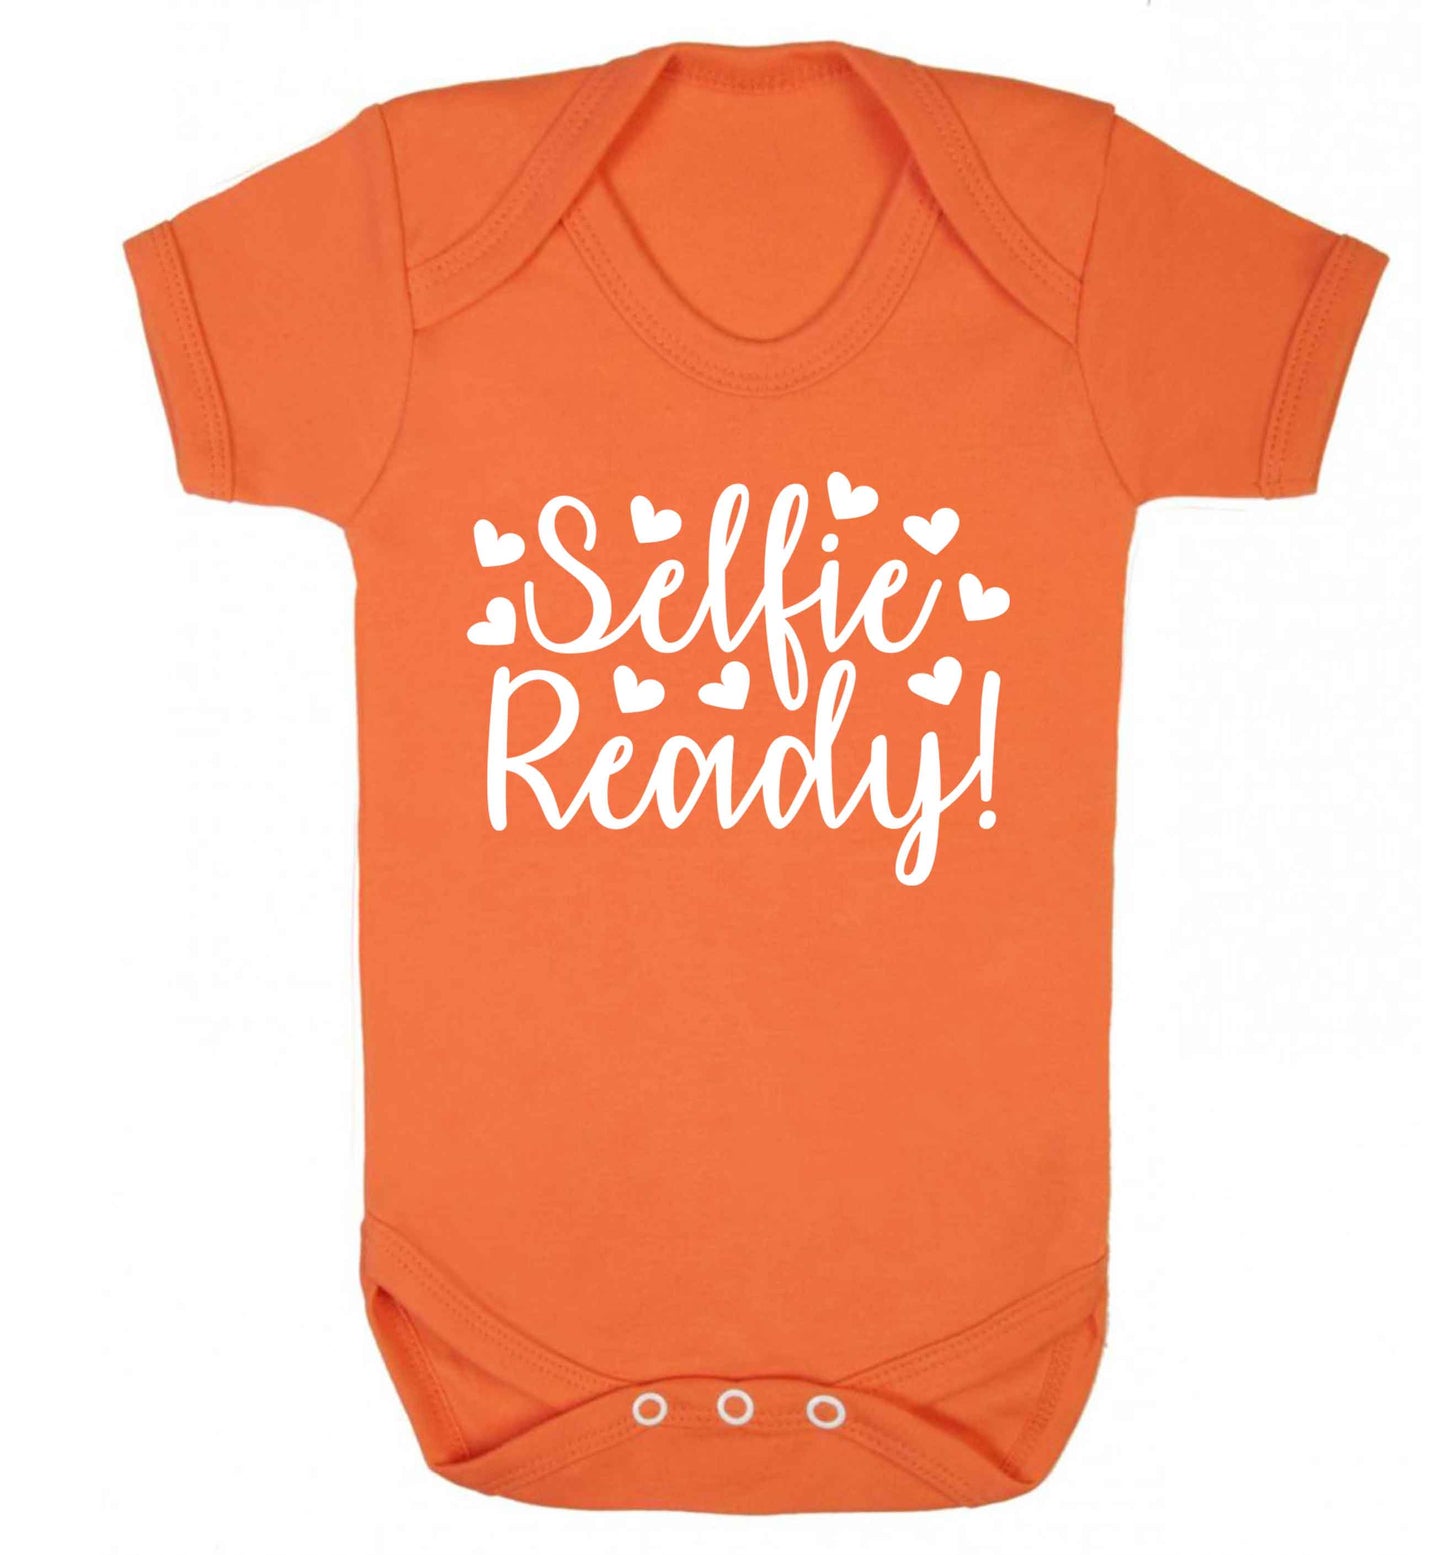 Selfie ready Baby Vest orange 18-24 months